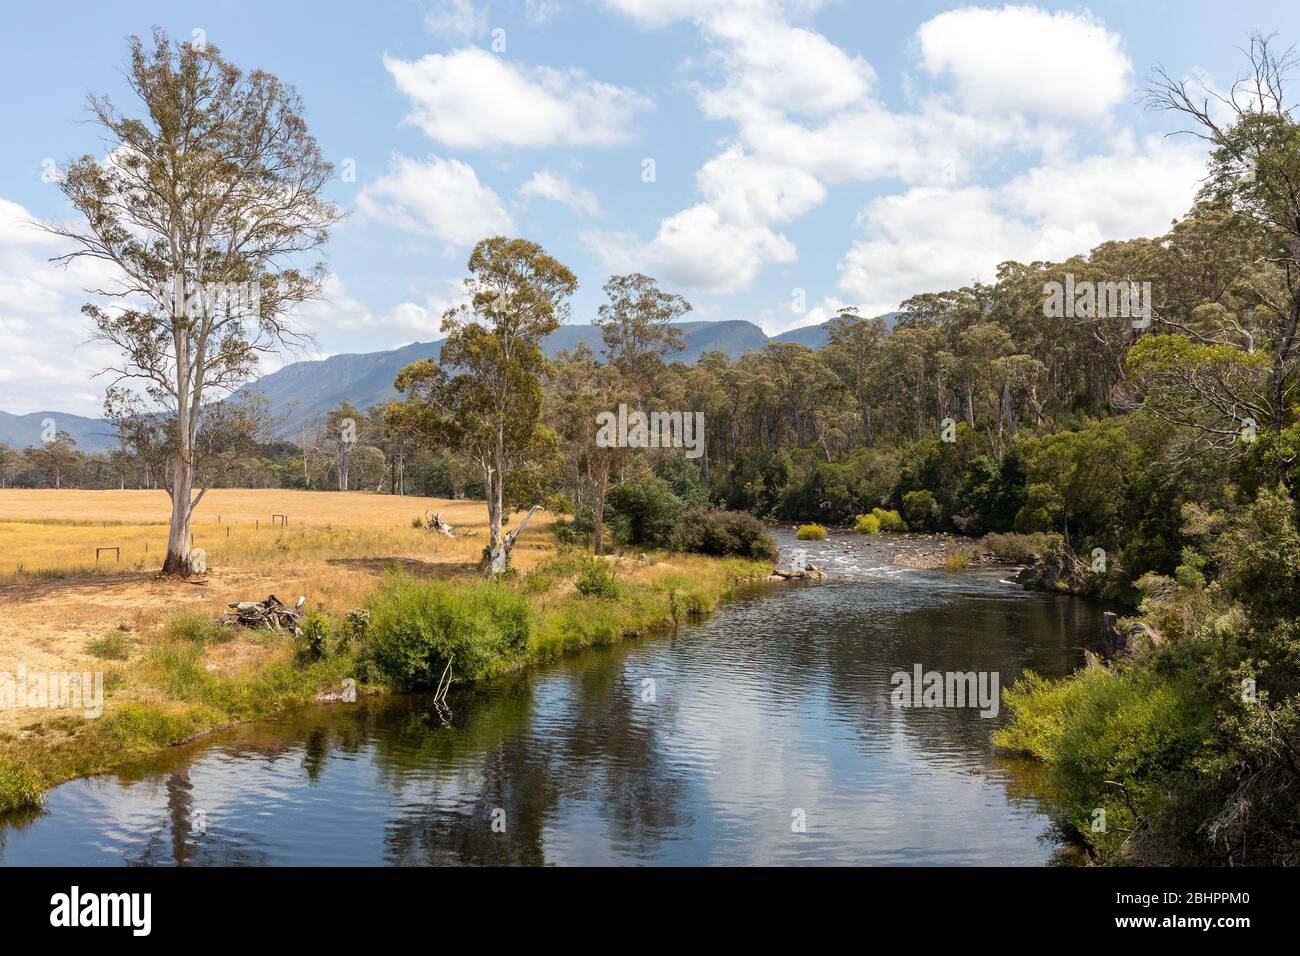 Mersey River landscape in Tasmania, Australia Stock Photo